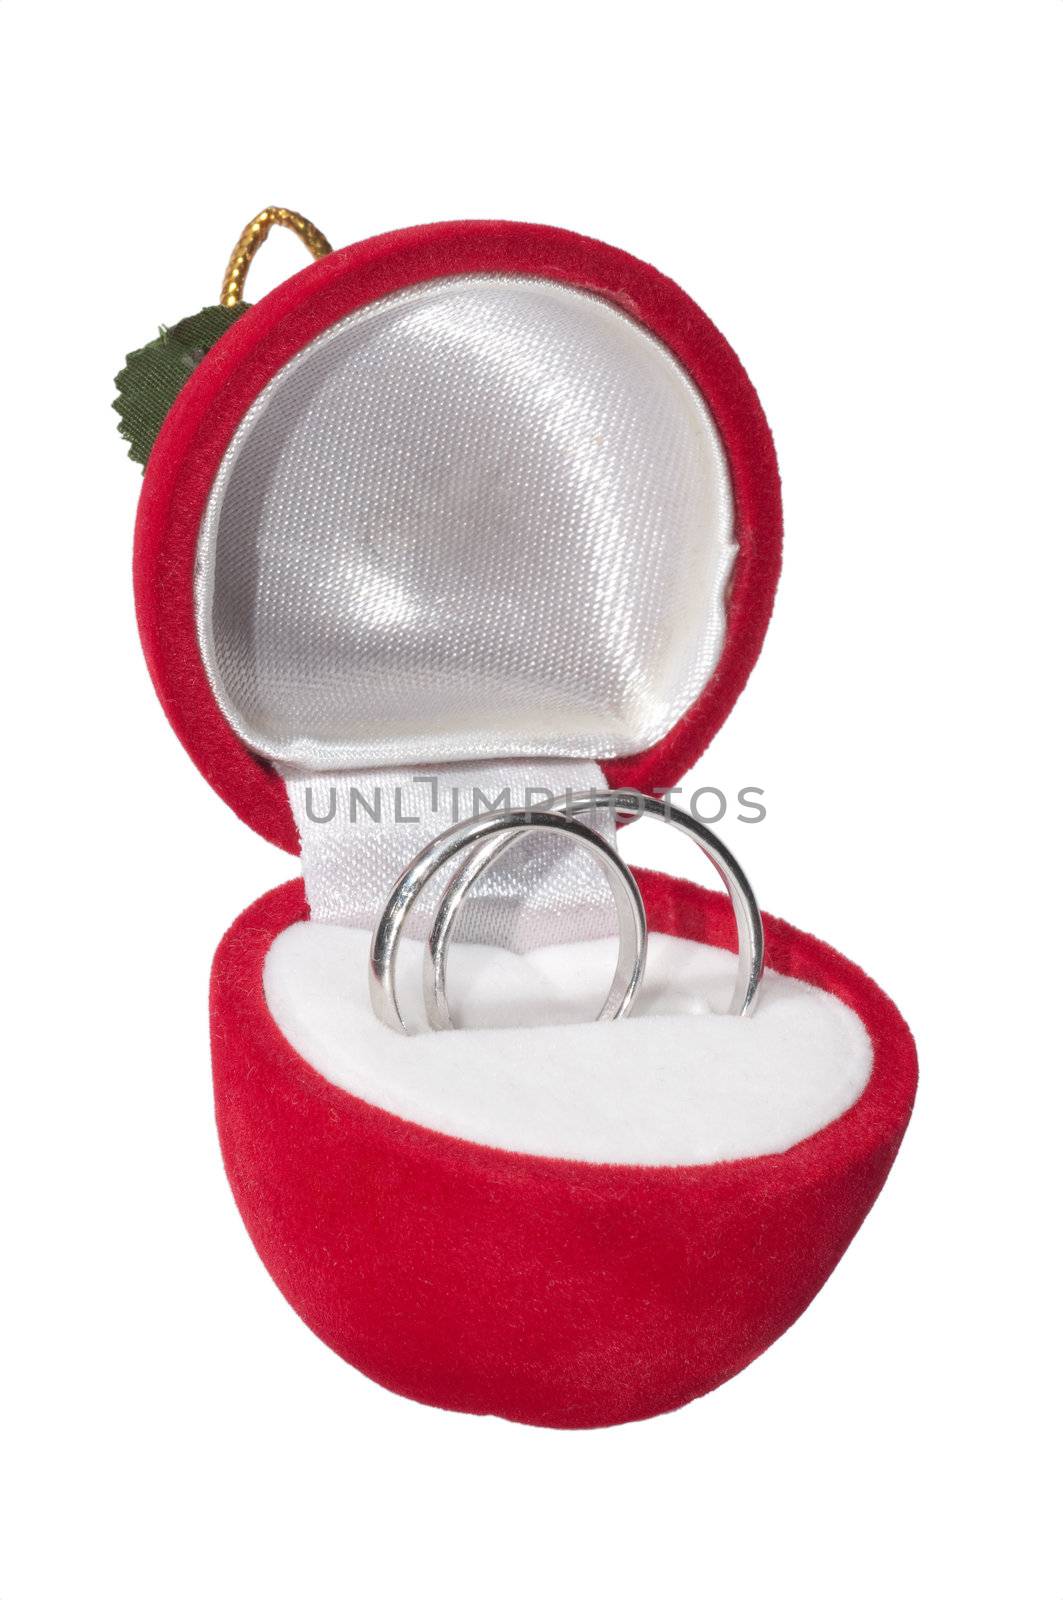 Wedding rings in velvet box isolated on white background 